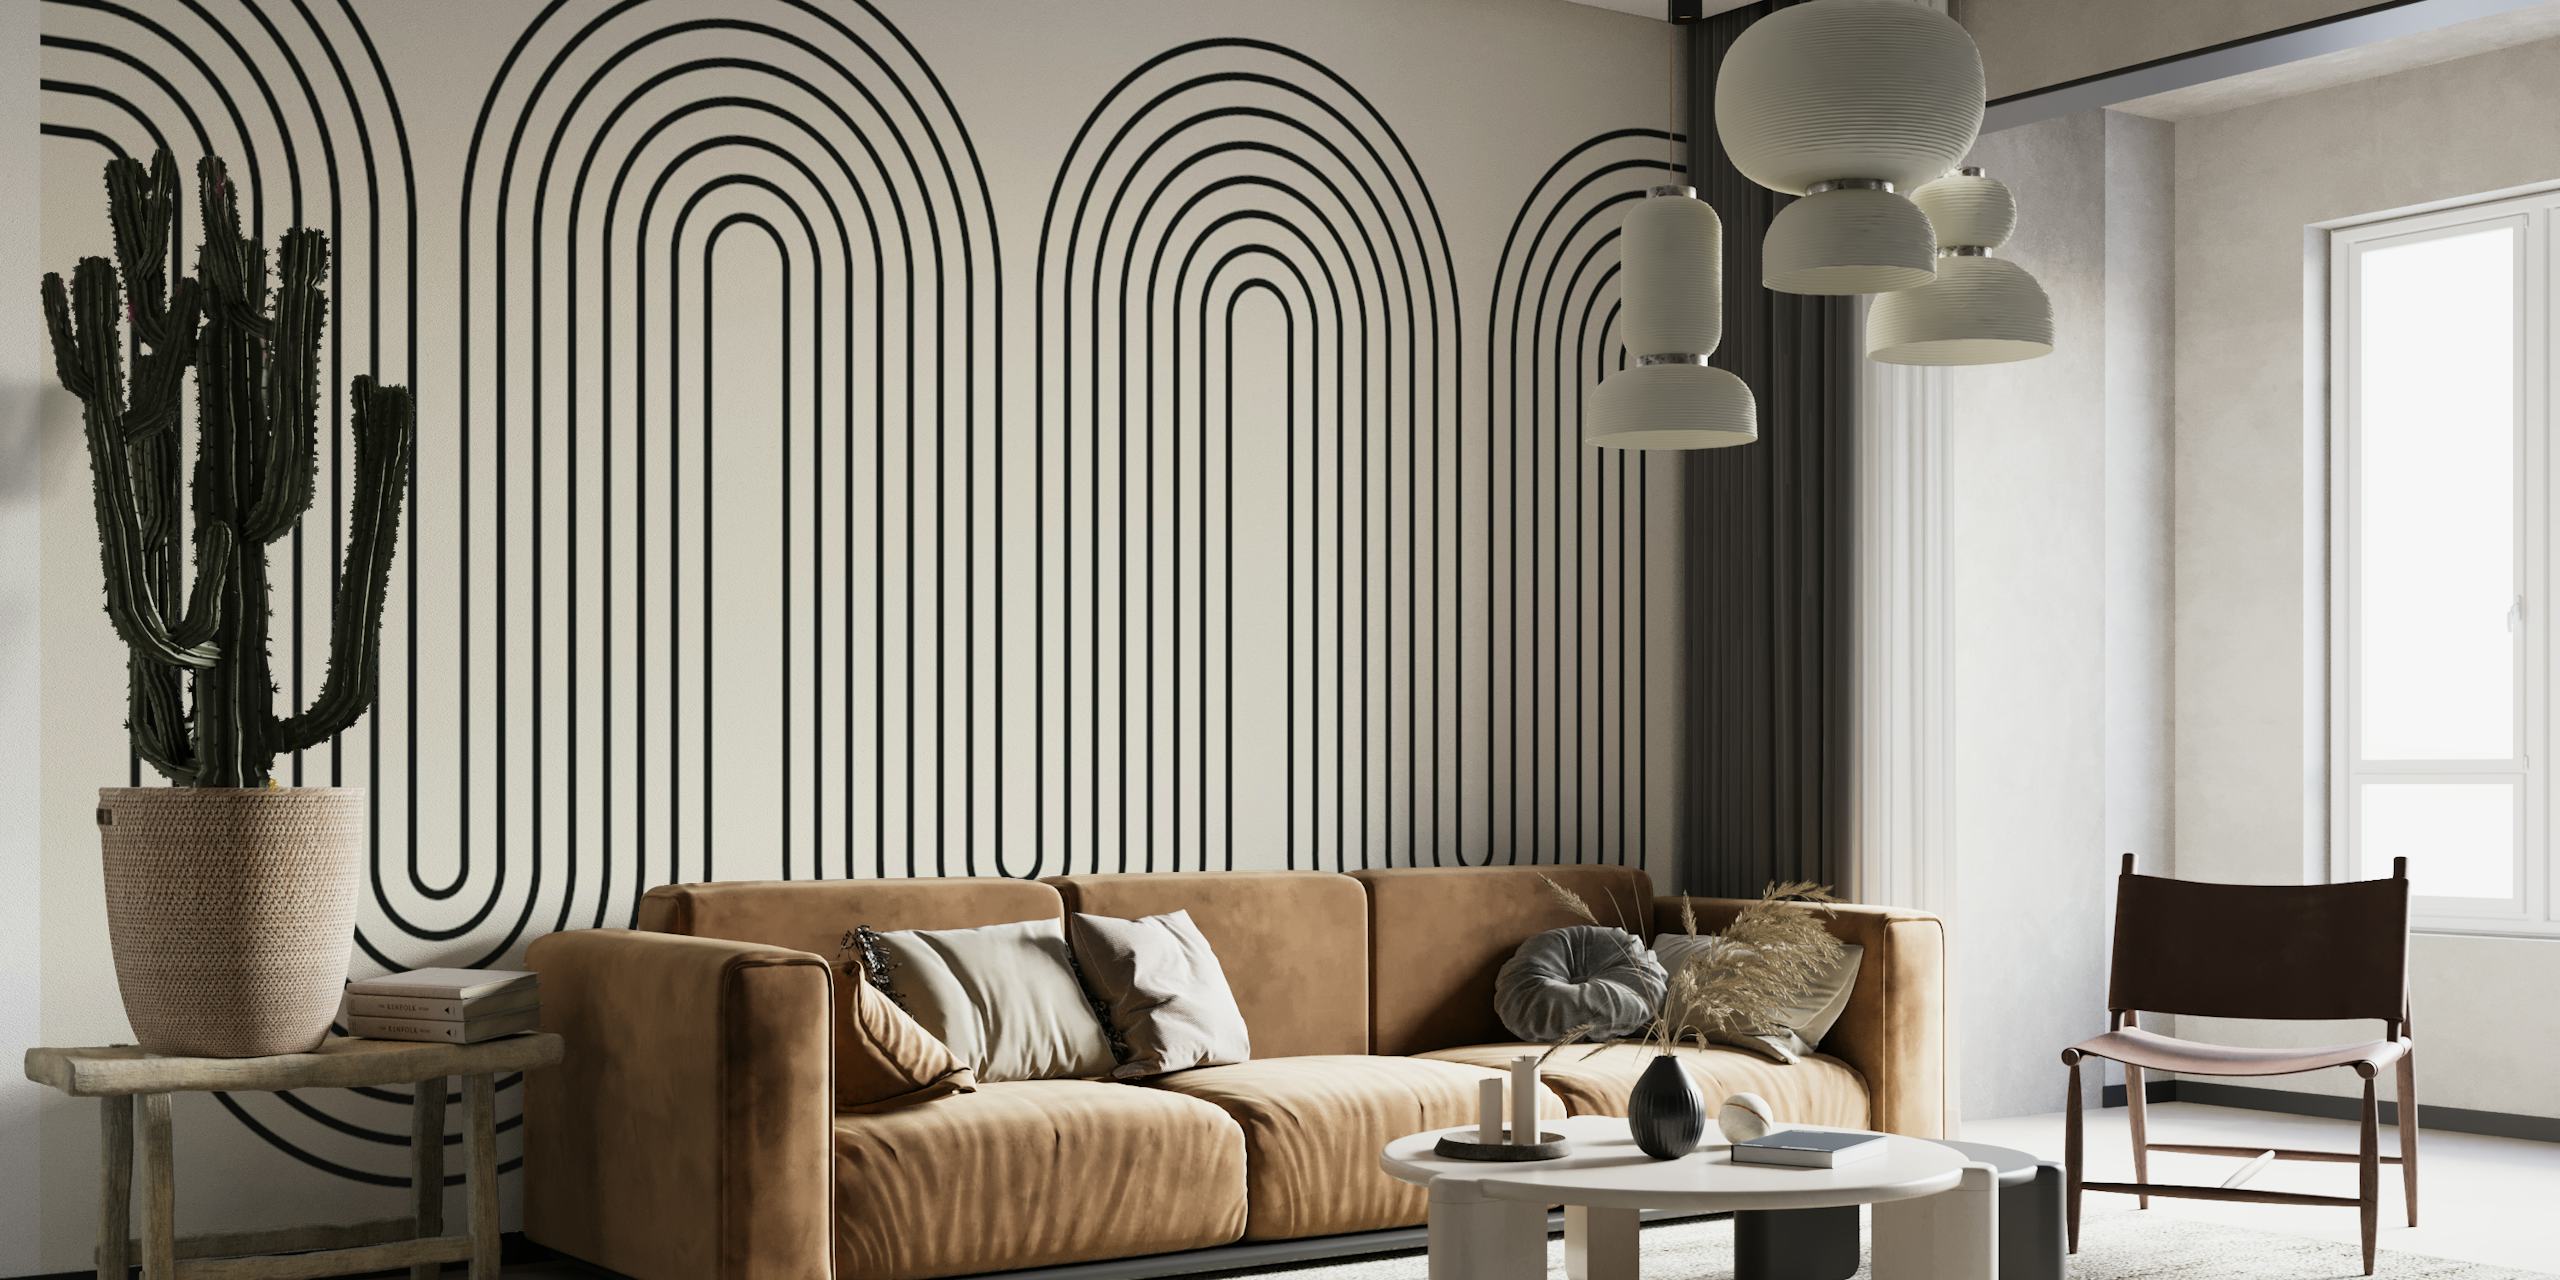 Moderni minimalistički zidni mural valovitih linija u sivim tonovima